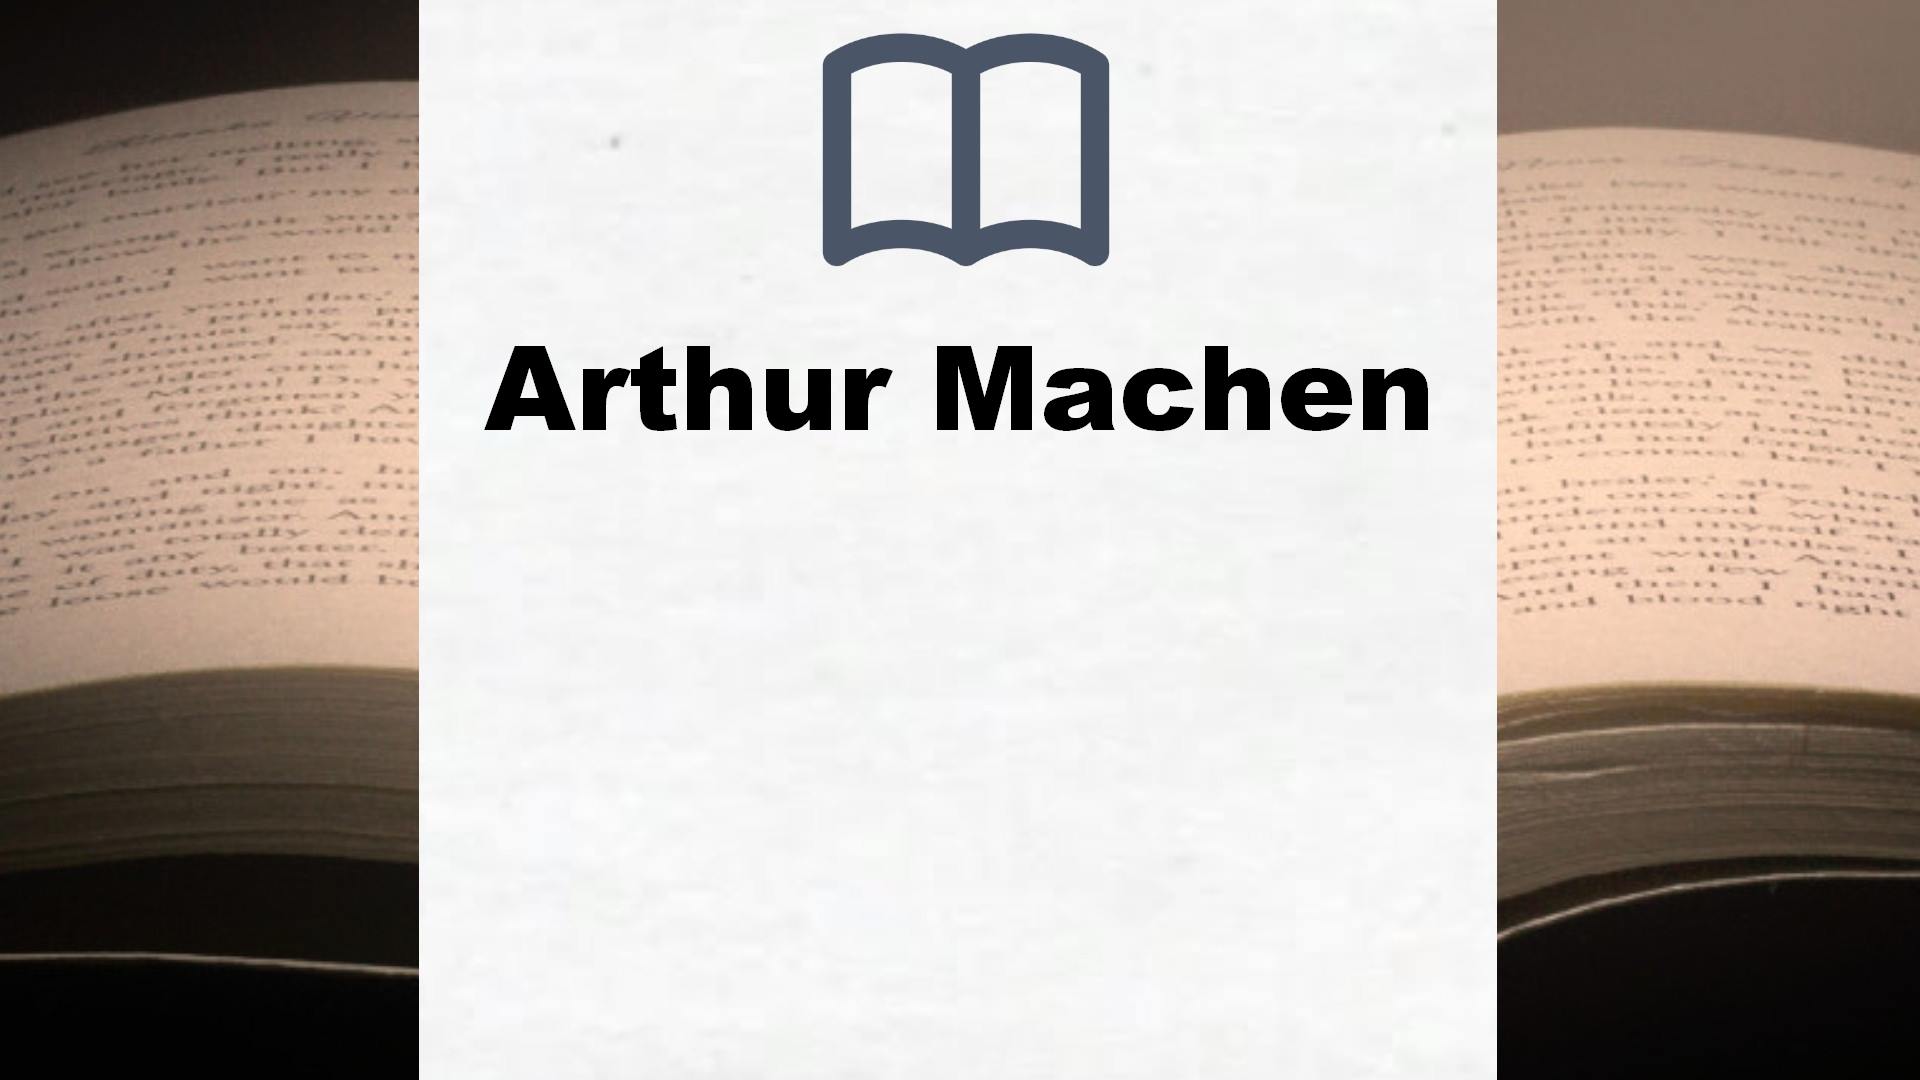 Libros Arthur Machen